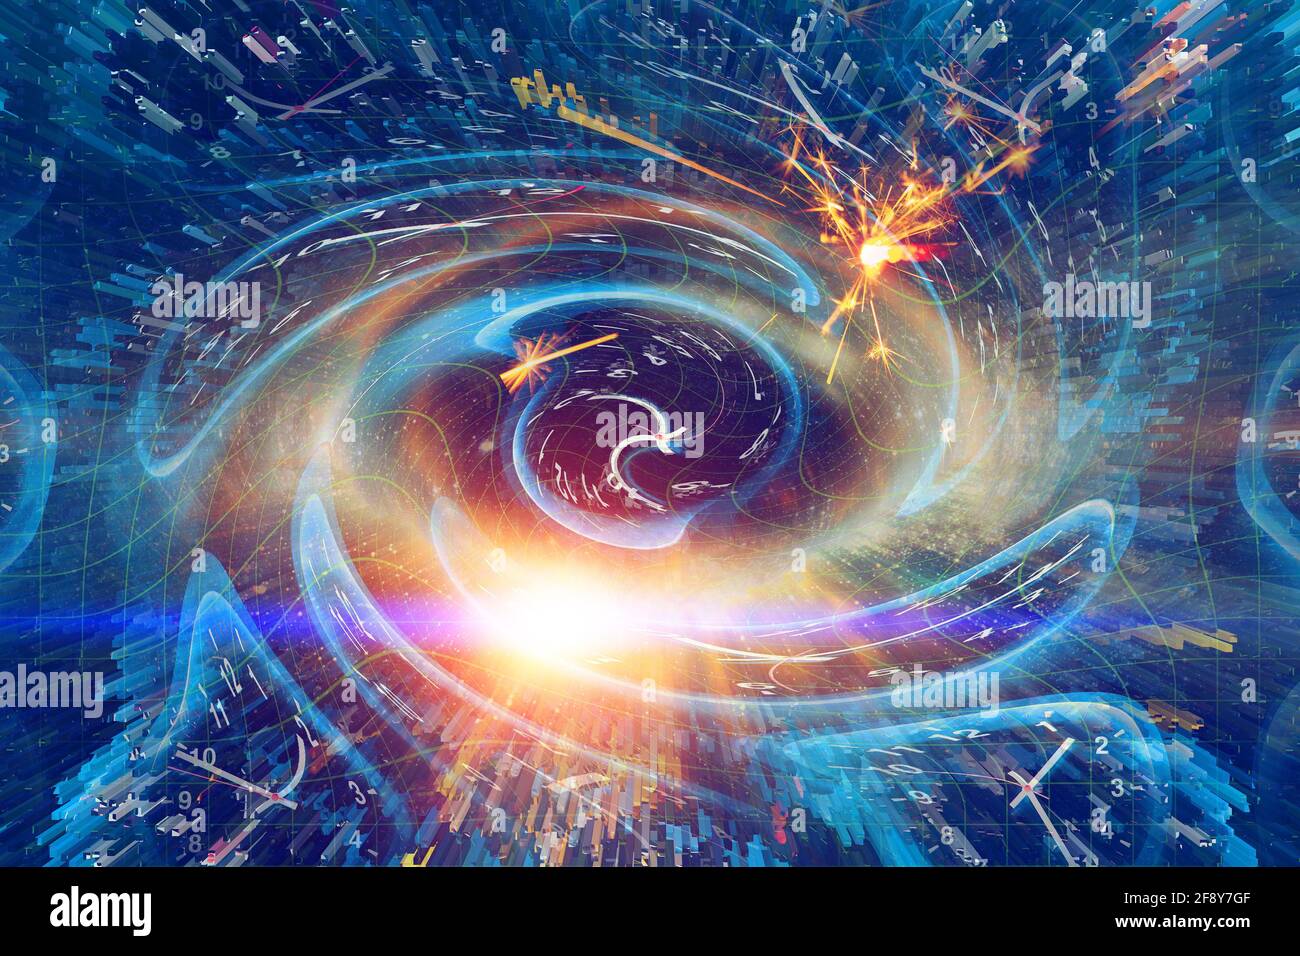 Space Time scifi Digital Arts concept, Twist horloge Time distorsion Warp sur l'espace incurvé comme trou représentent l'espace et les temps de la théorie d'Einstein Banque D'Images